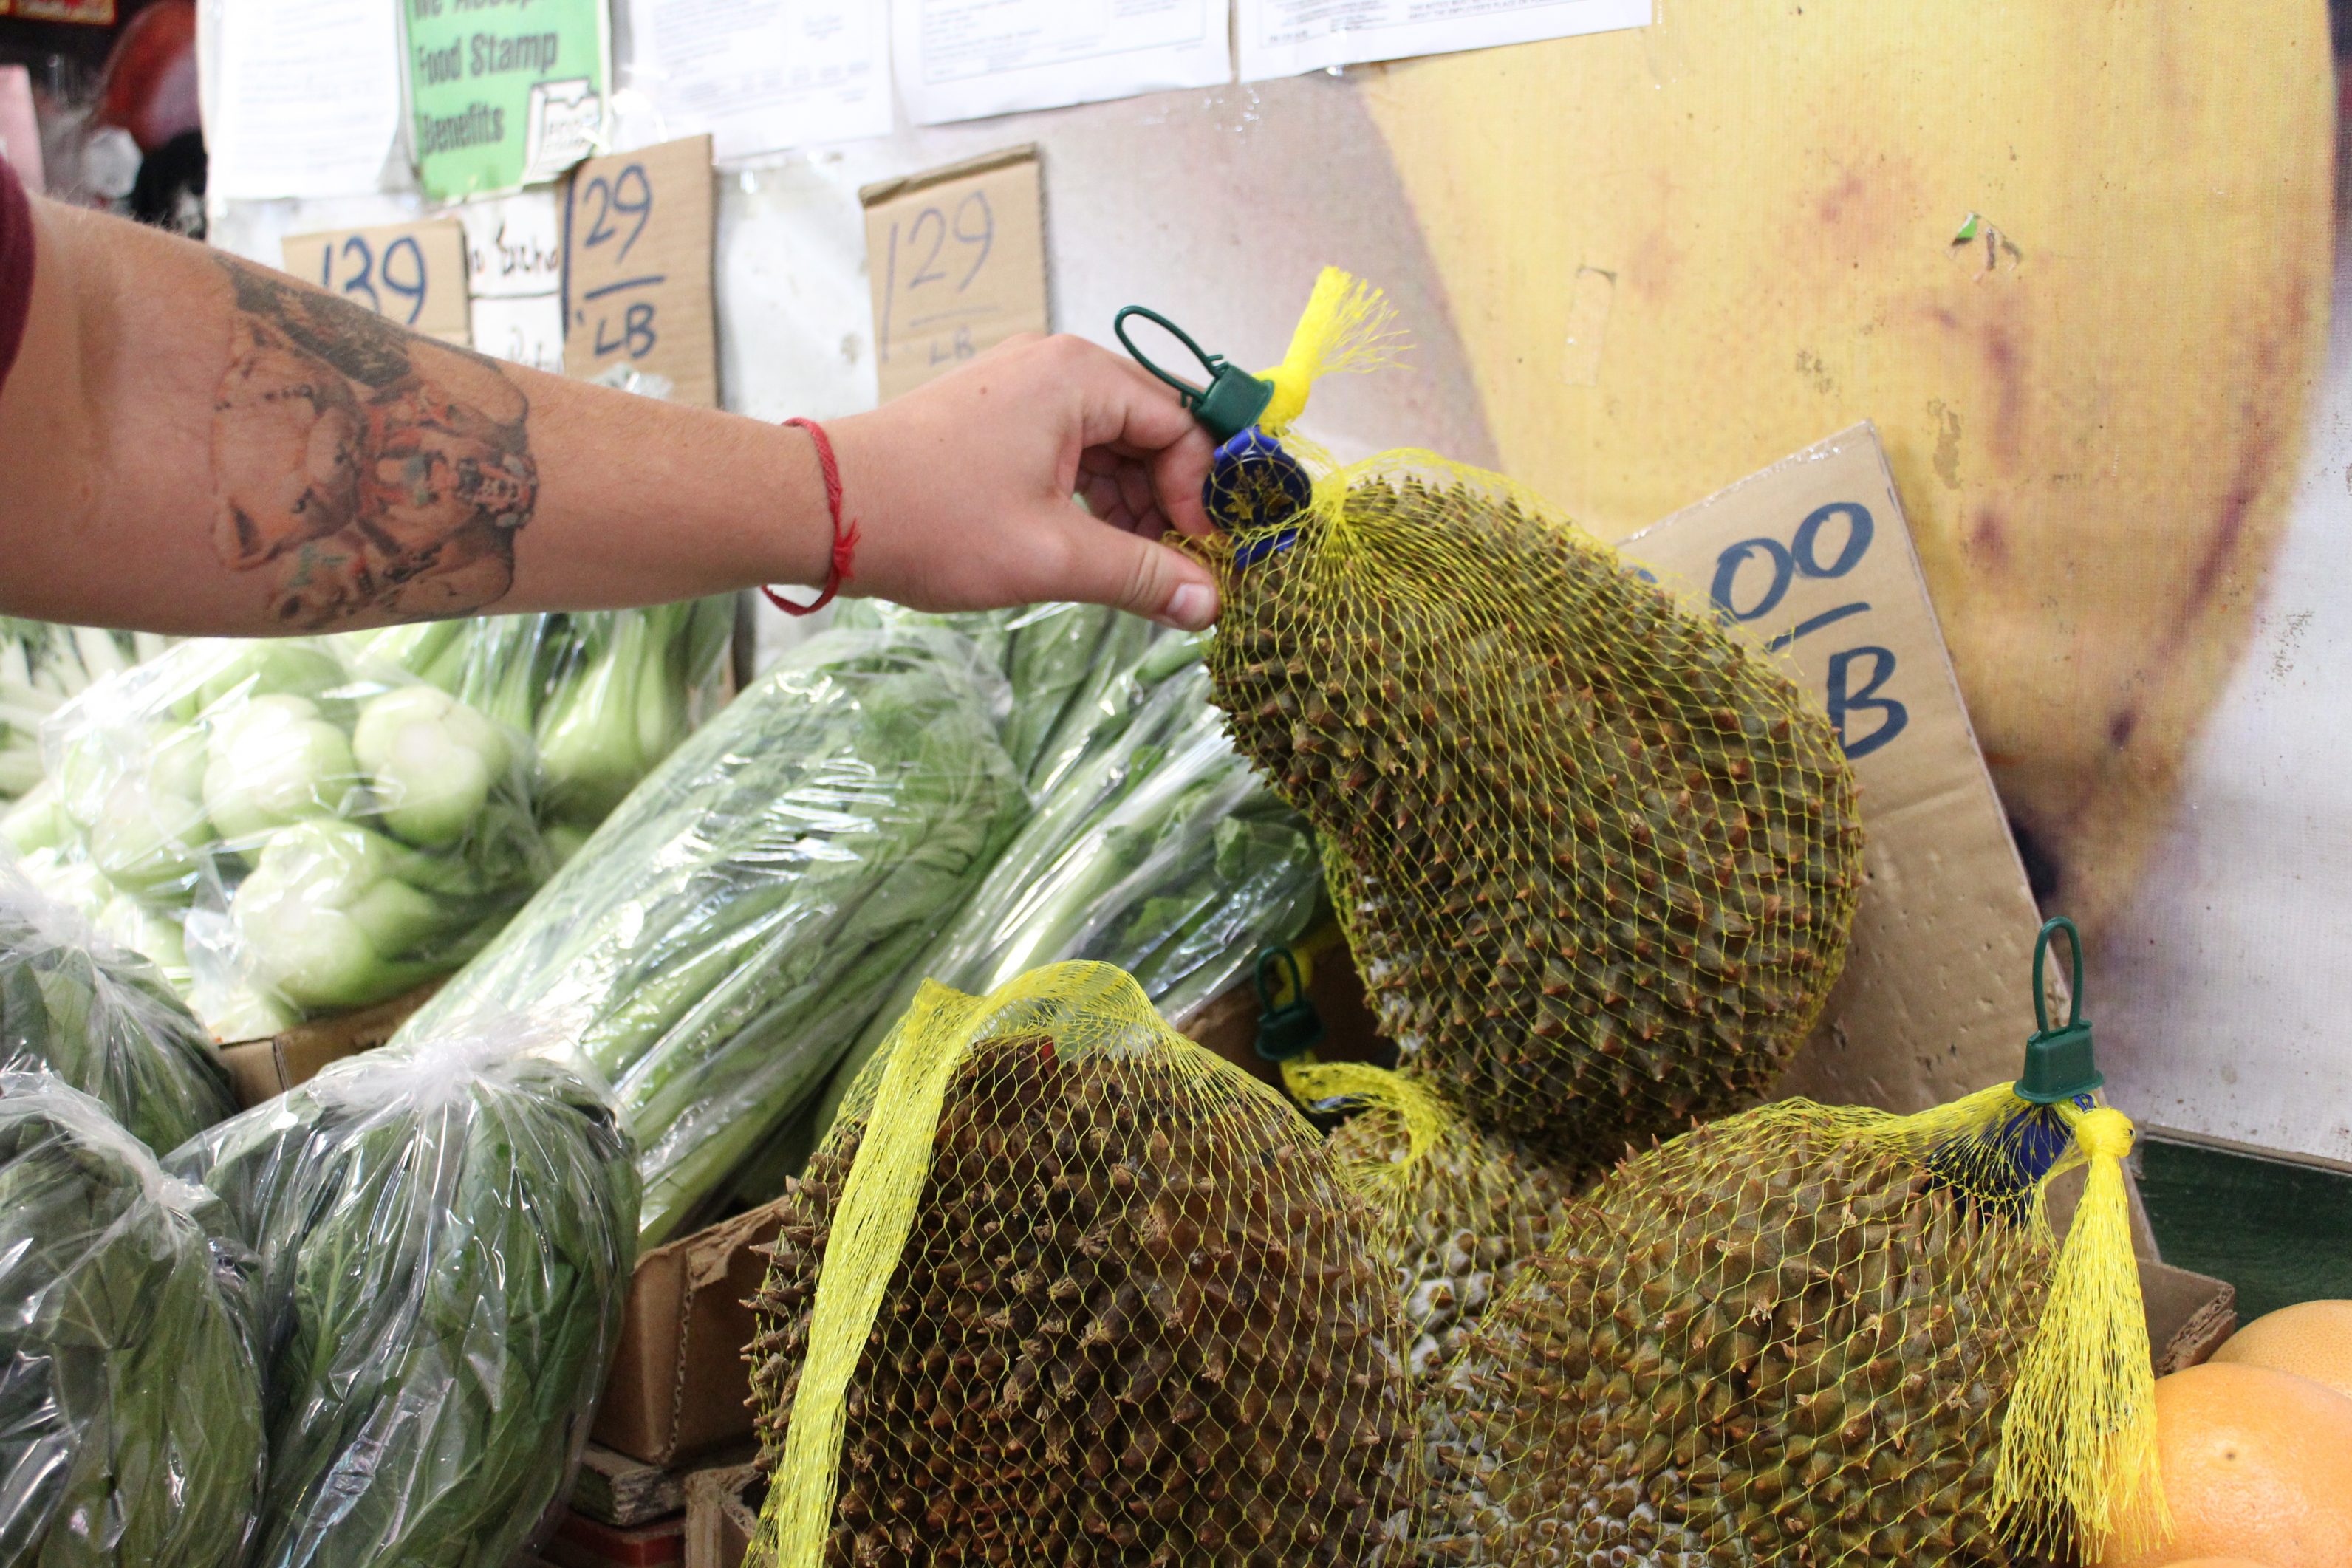 Ochutnali sme najsmradľavejšie ovocie na svete durian. Ako to dopadlo?